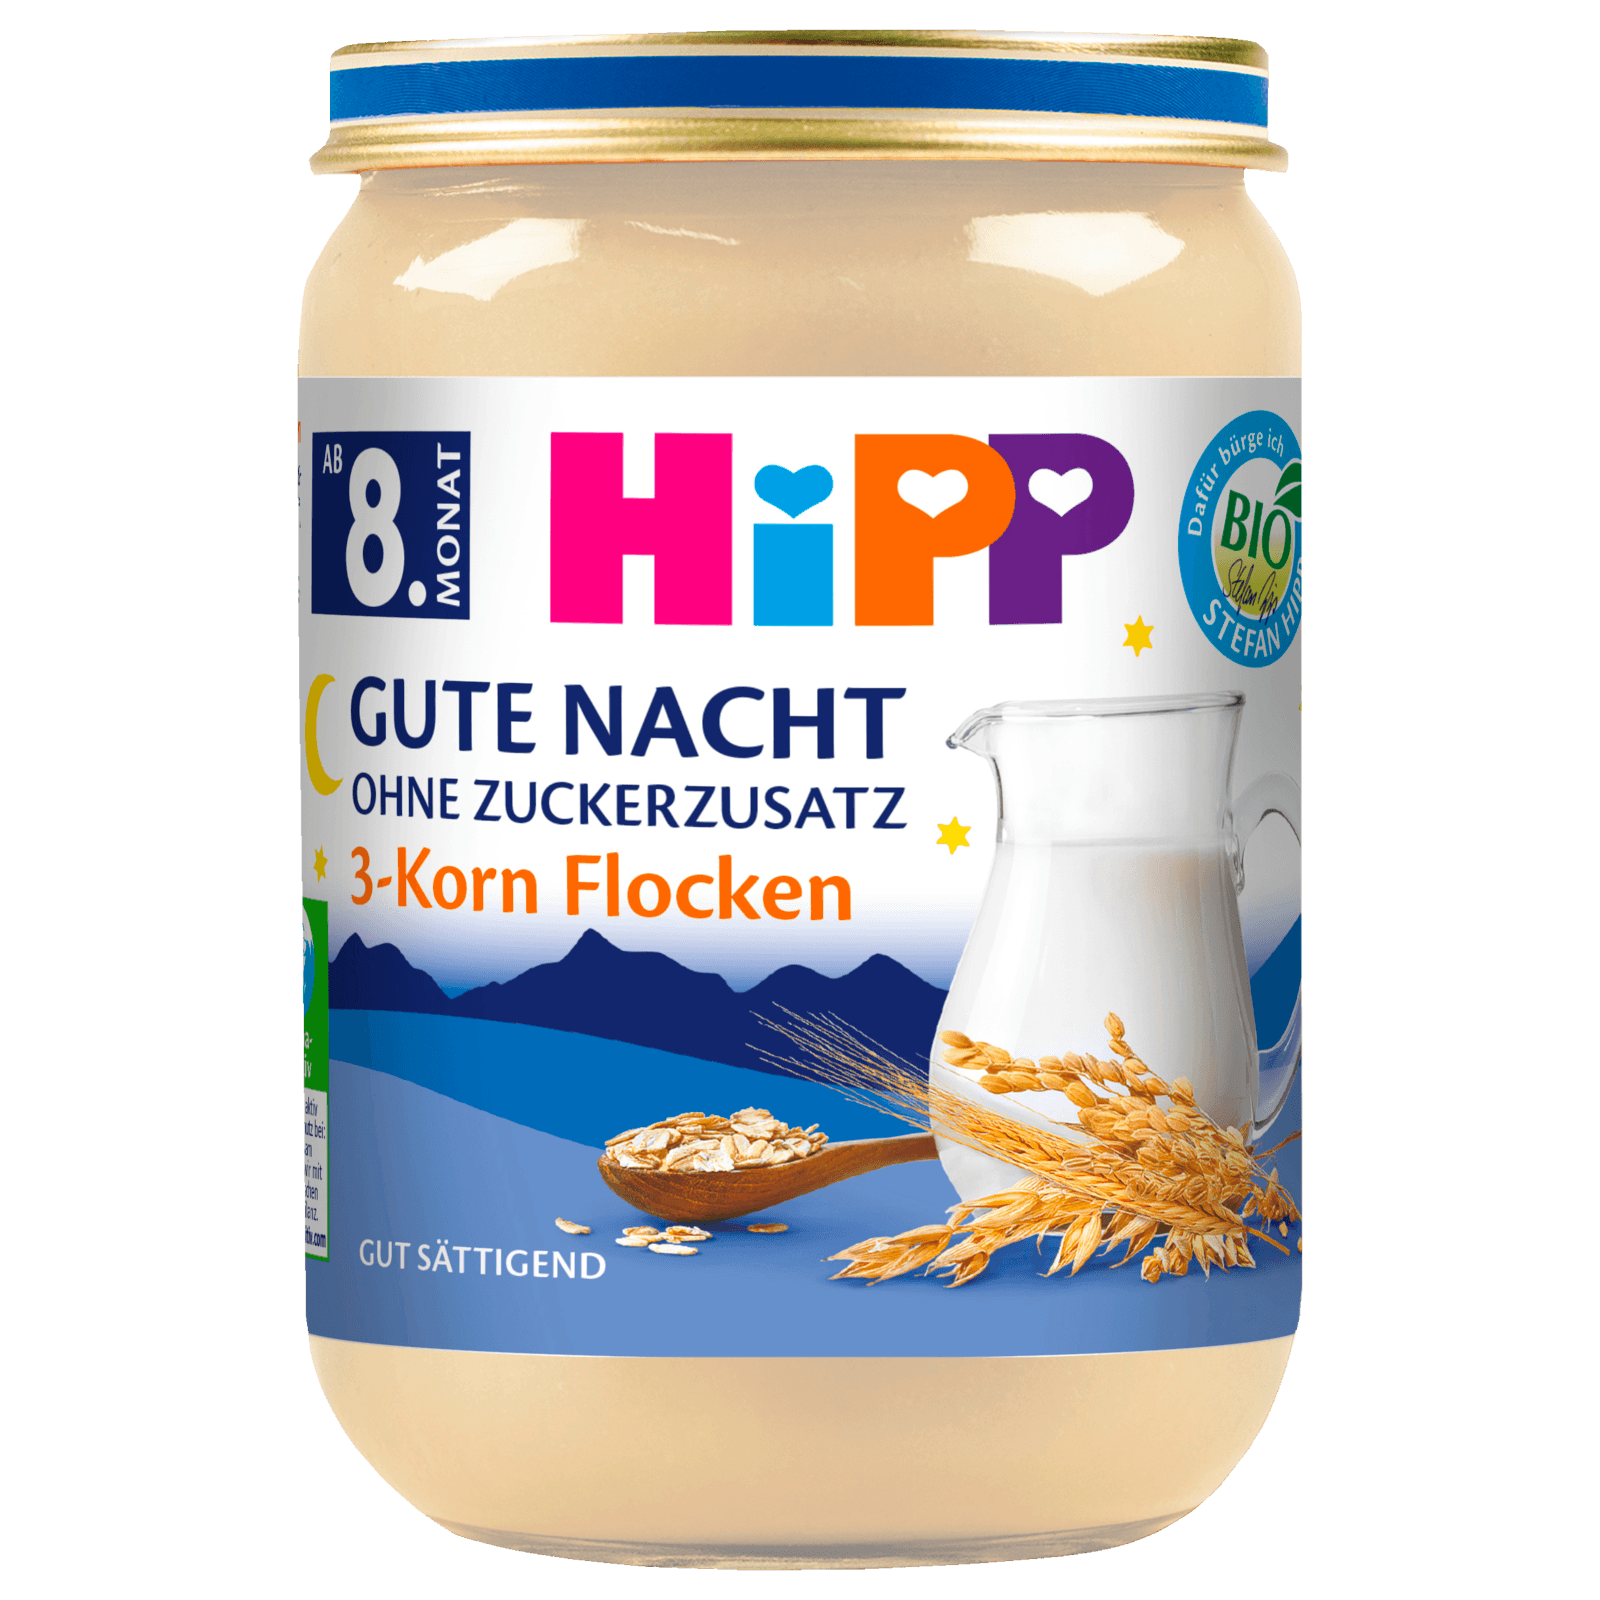 Hipp Bio Gute Nacht ohne Zuckerzusatz 3-Korn Flocken